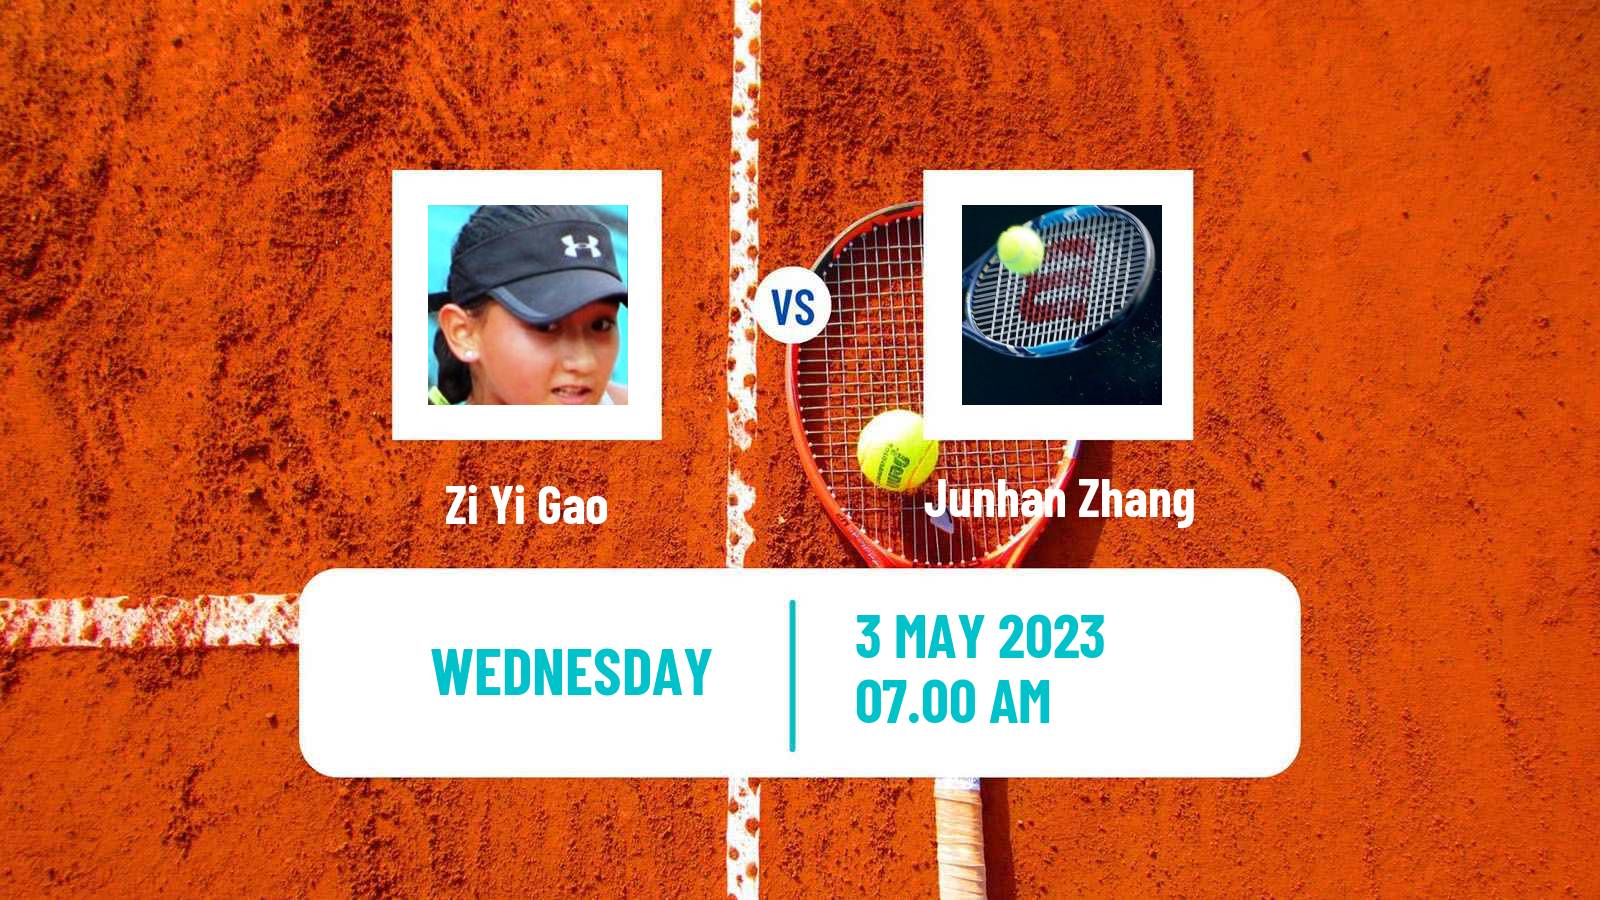 Tennis ITF Tournaments Zi Yi Gao - Junhan Zhang